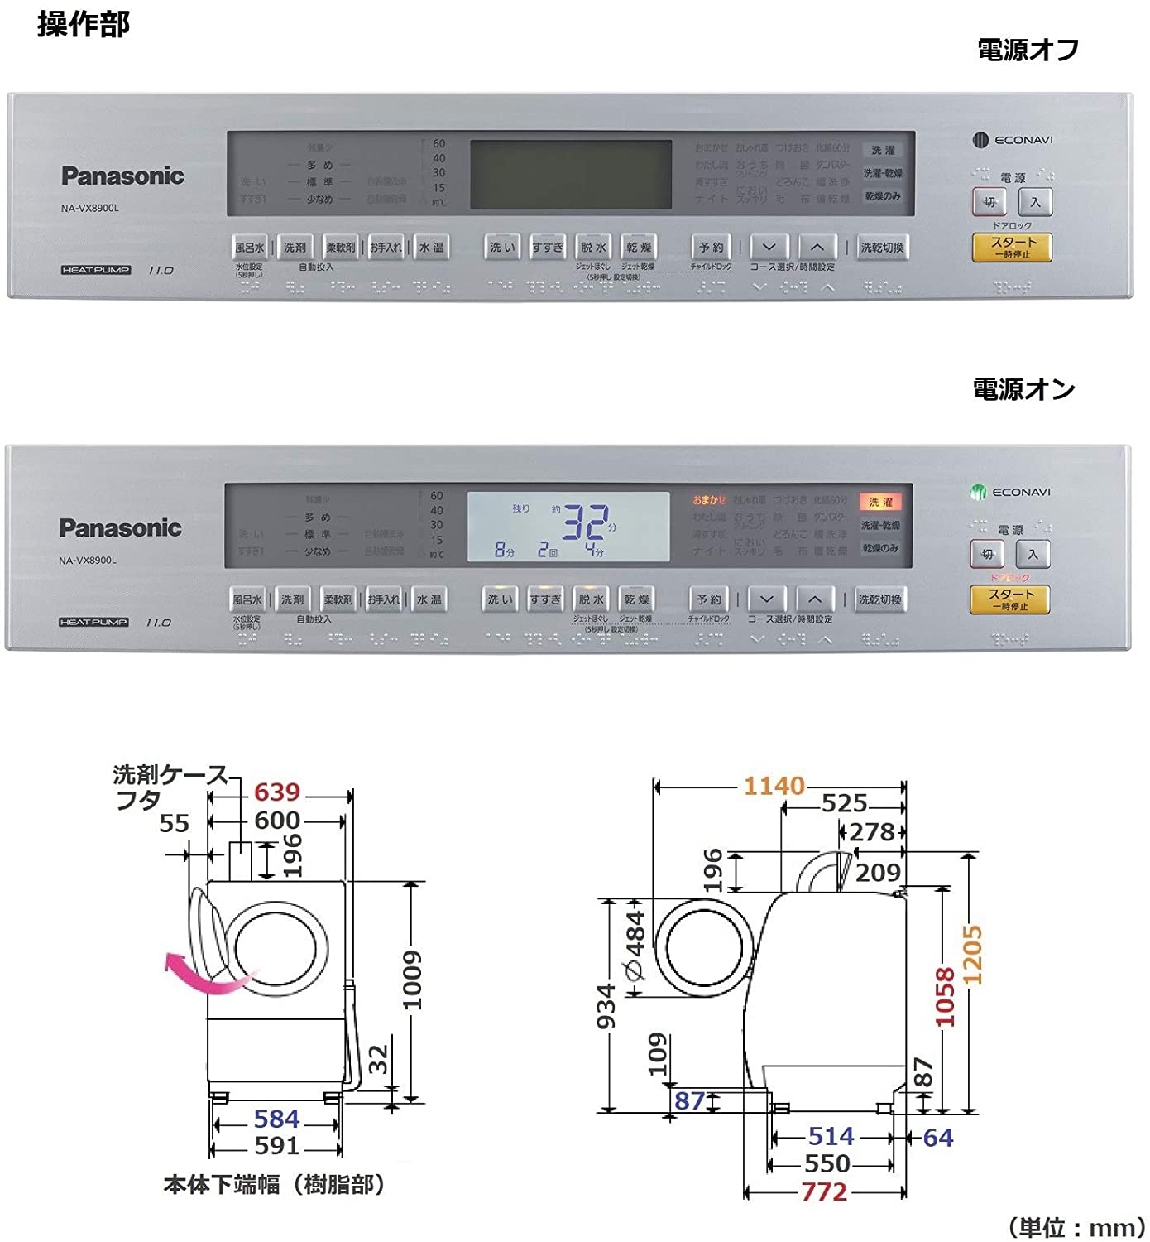 Panasonic(パナソニック) ななめドラム洗濯乾燥機 NA-VX8900Lの商品画像3 